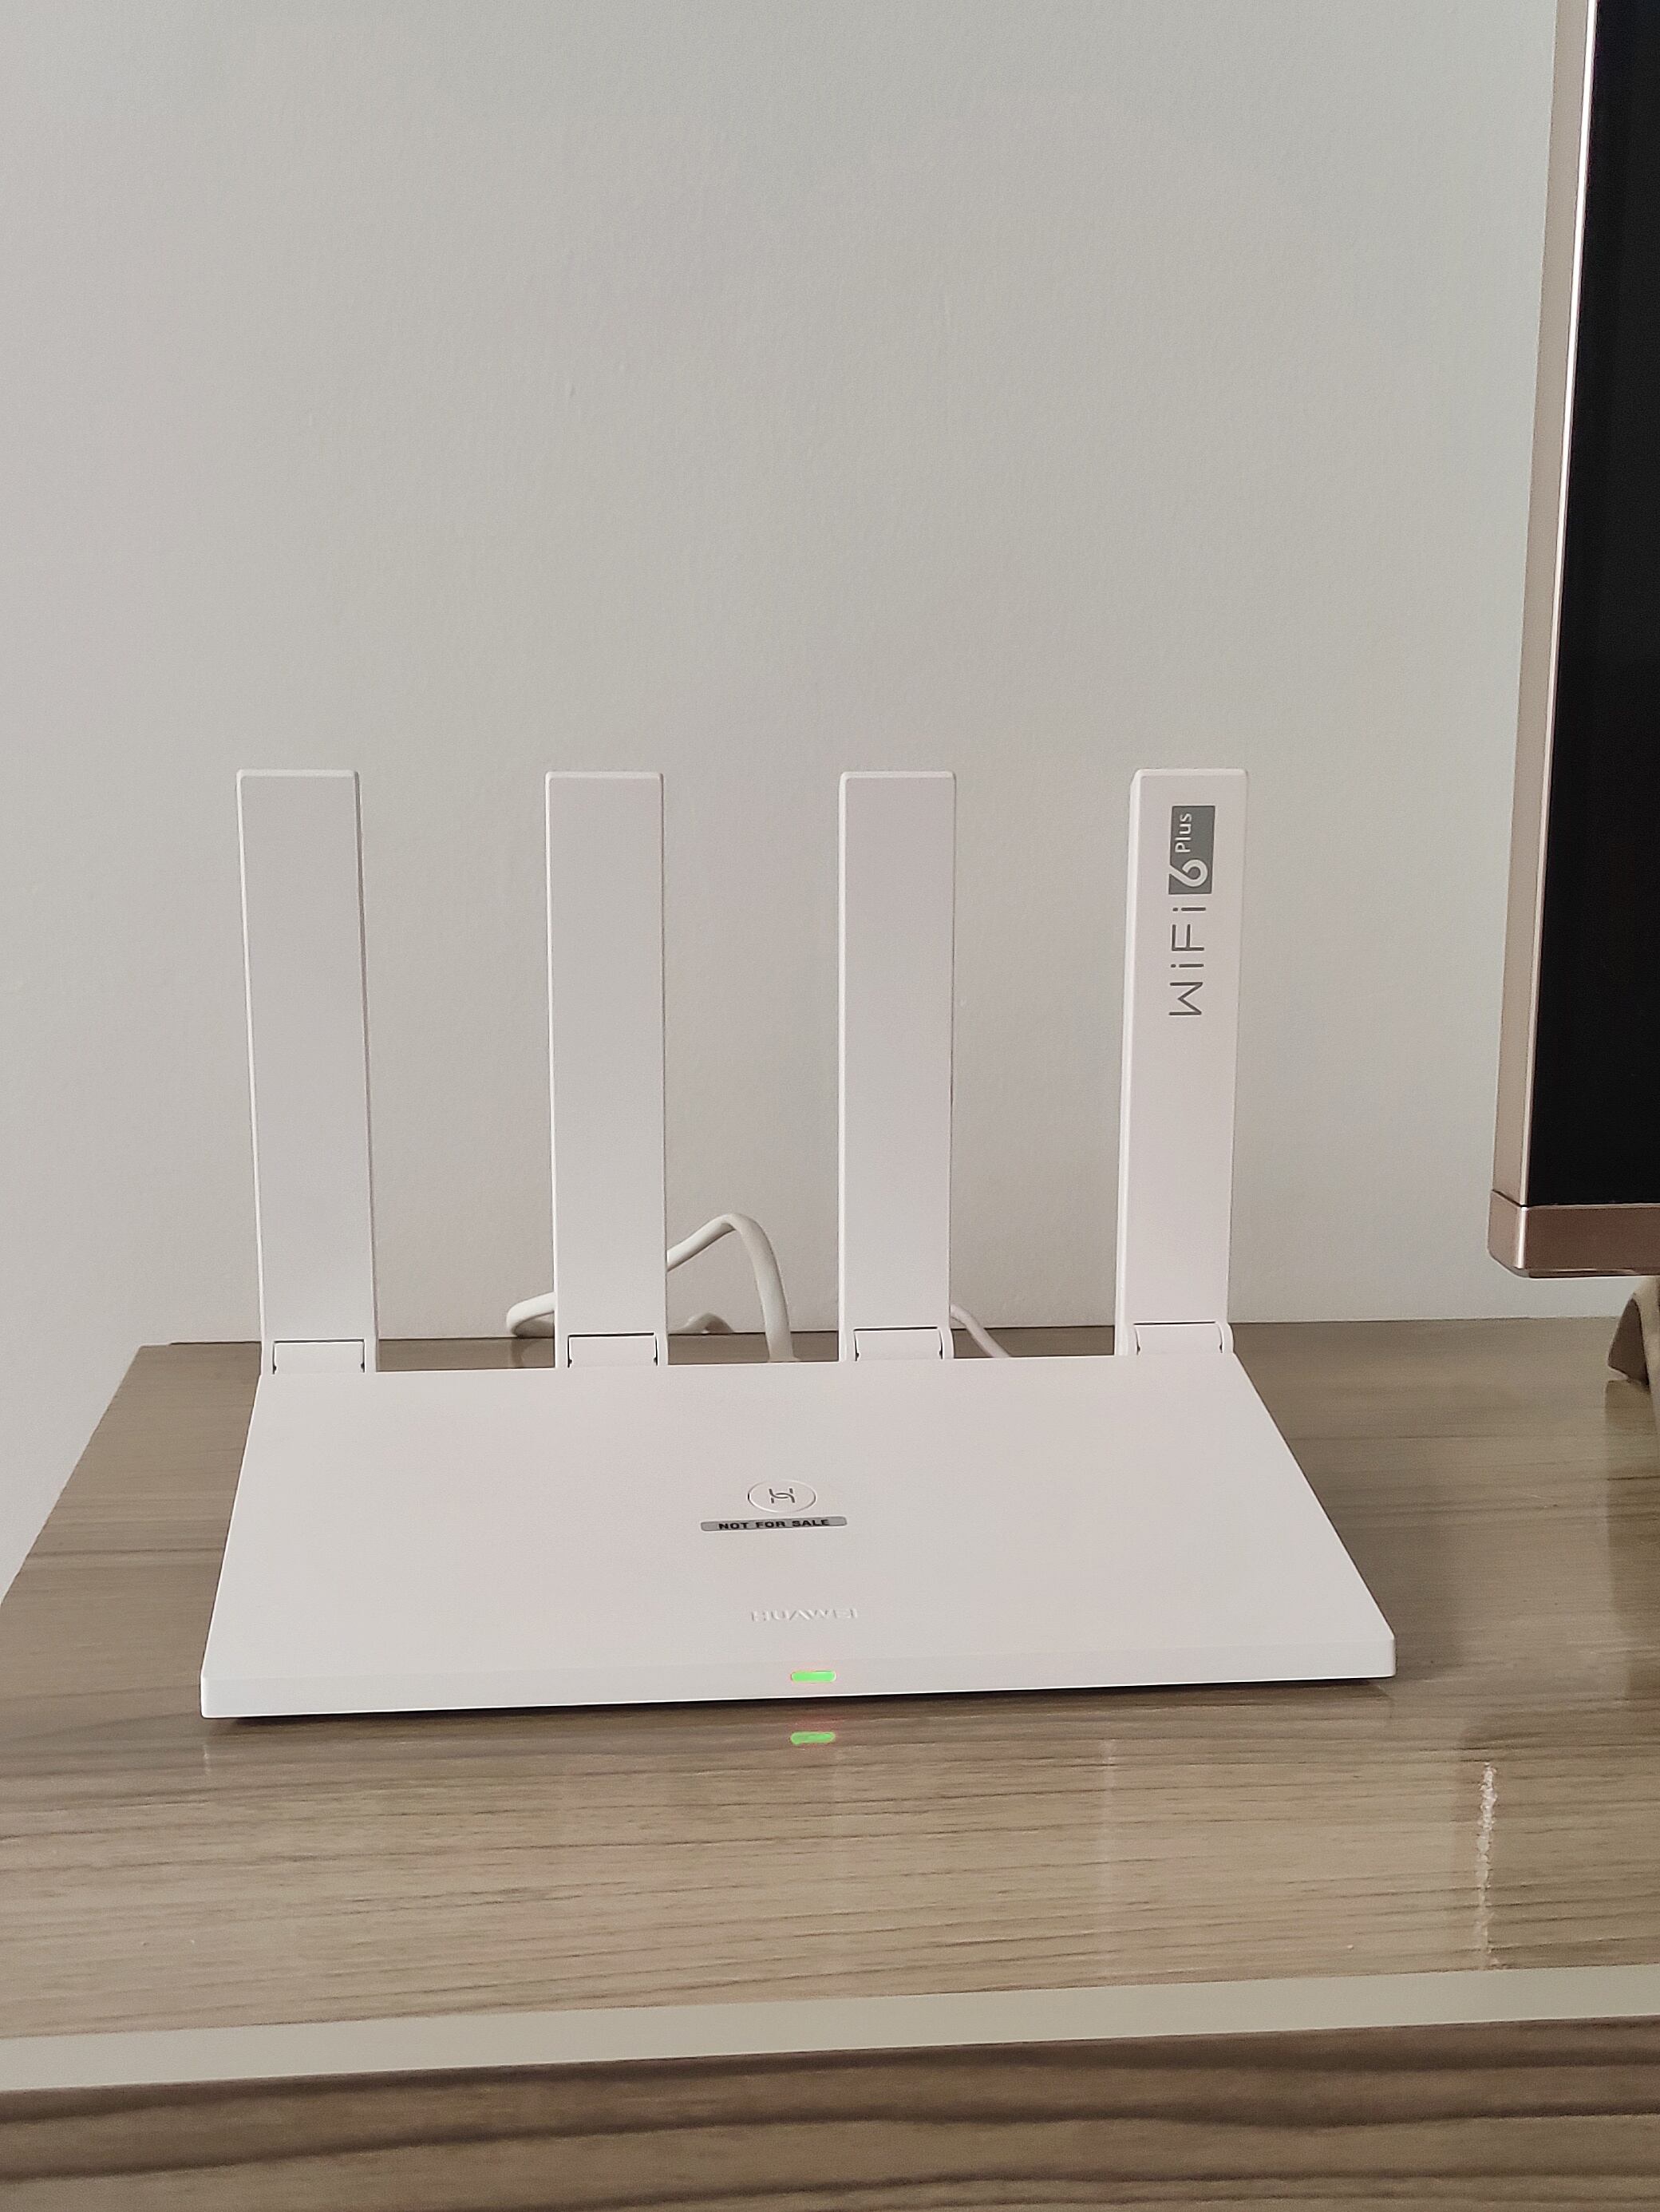 El Huawei AX3 es un equipo de diseño minimalista.